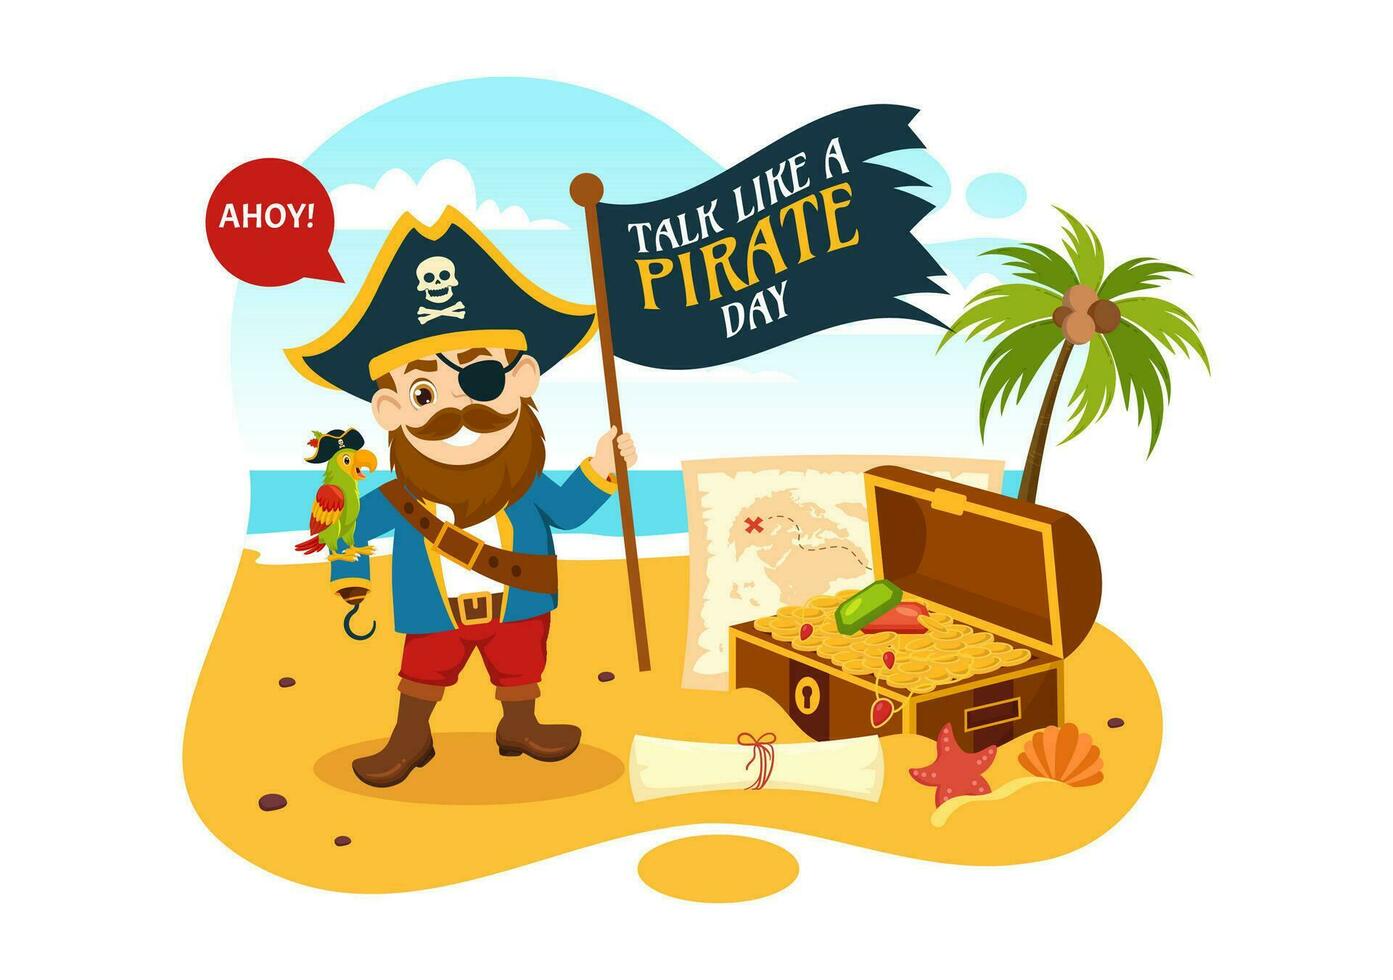 Internationale praten Leuk vinden een piraat dag vector illustratie met schattig piraten tekenfilm karakter in hand- getrokken voor web banier of landen bladzijde Sjablonen